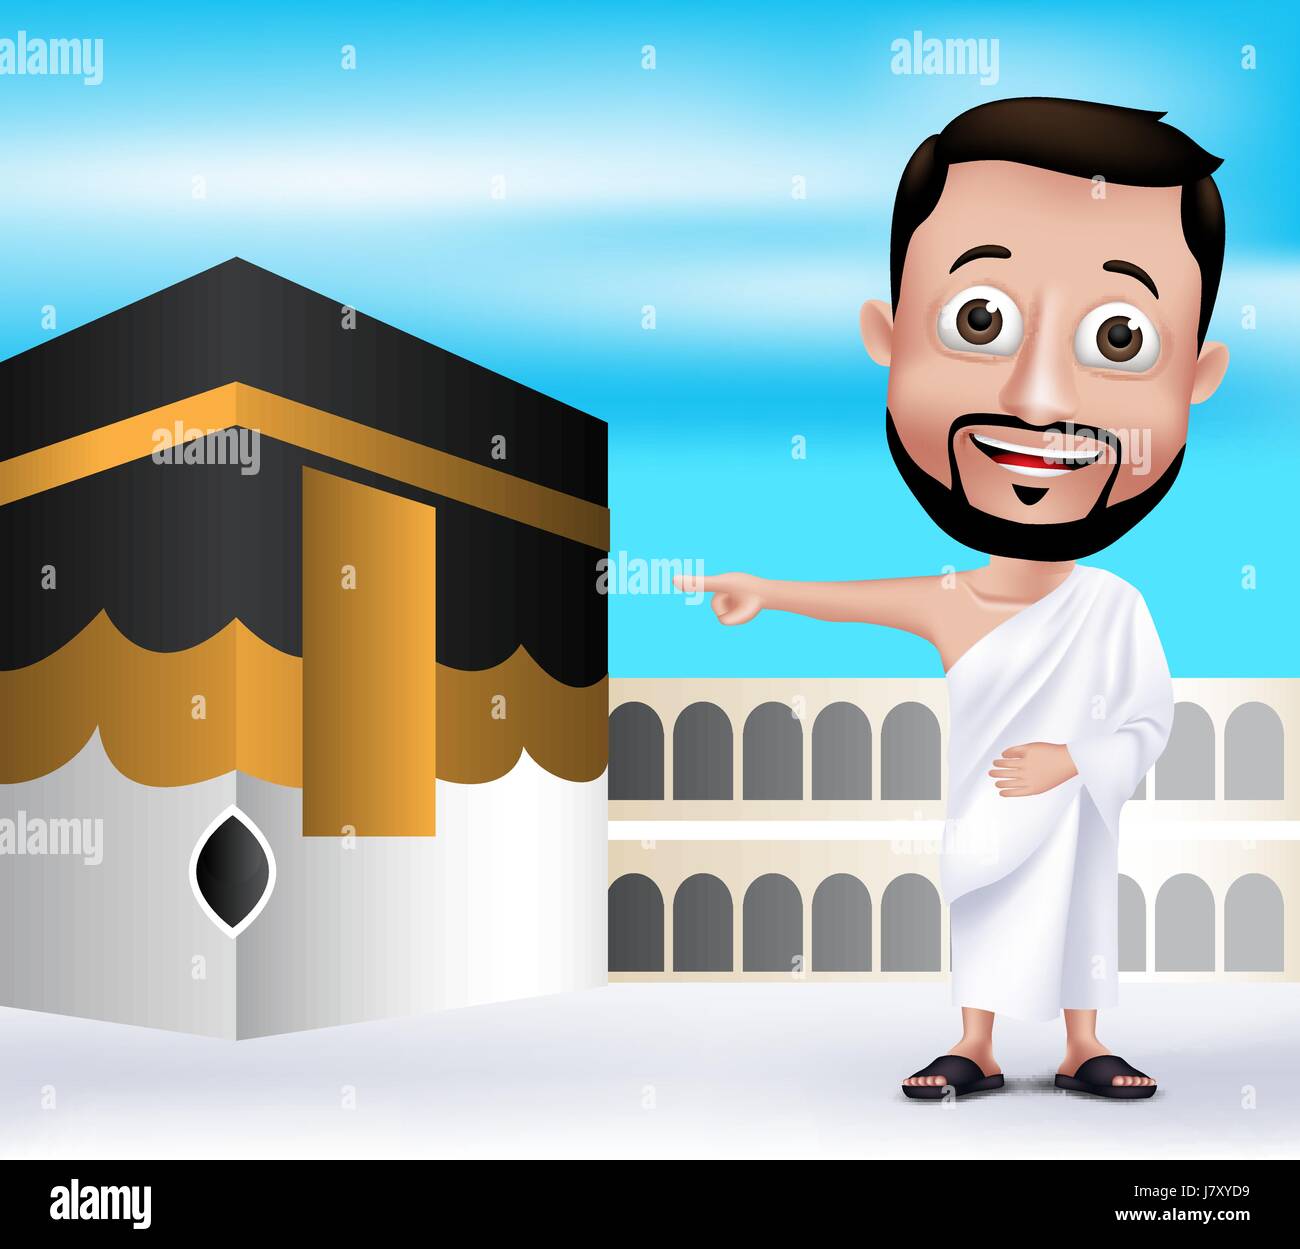 Vektor muslimischen Mann Charakter tragen Ihram Kleidung durchführen Hajj oder Umra mit Kaaba in Mekka Hintergrund. Bearbeitbares Vektor-Illustration Stock Vektor